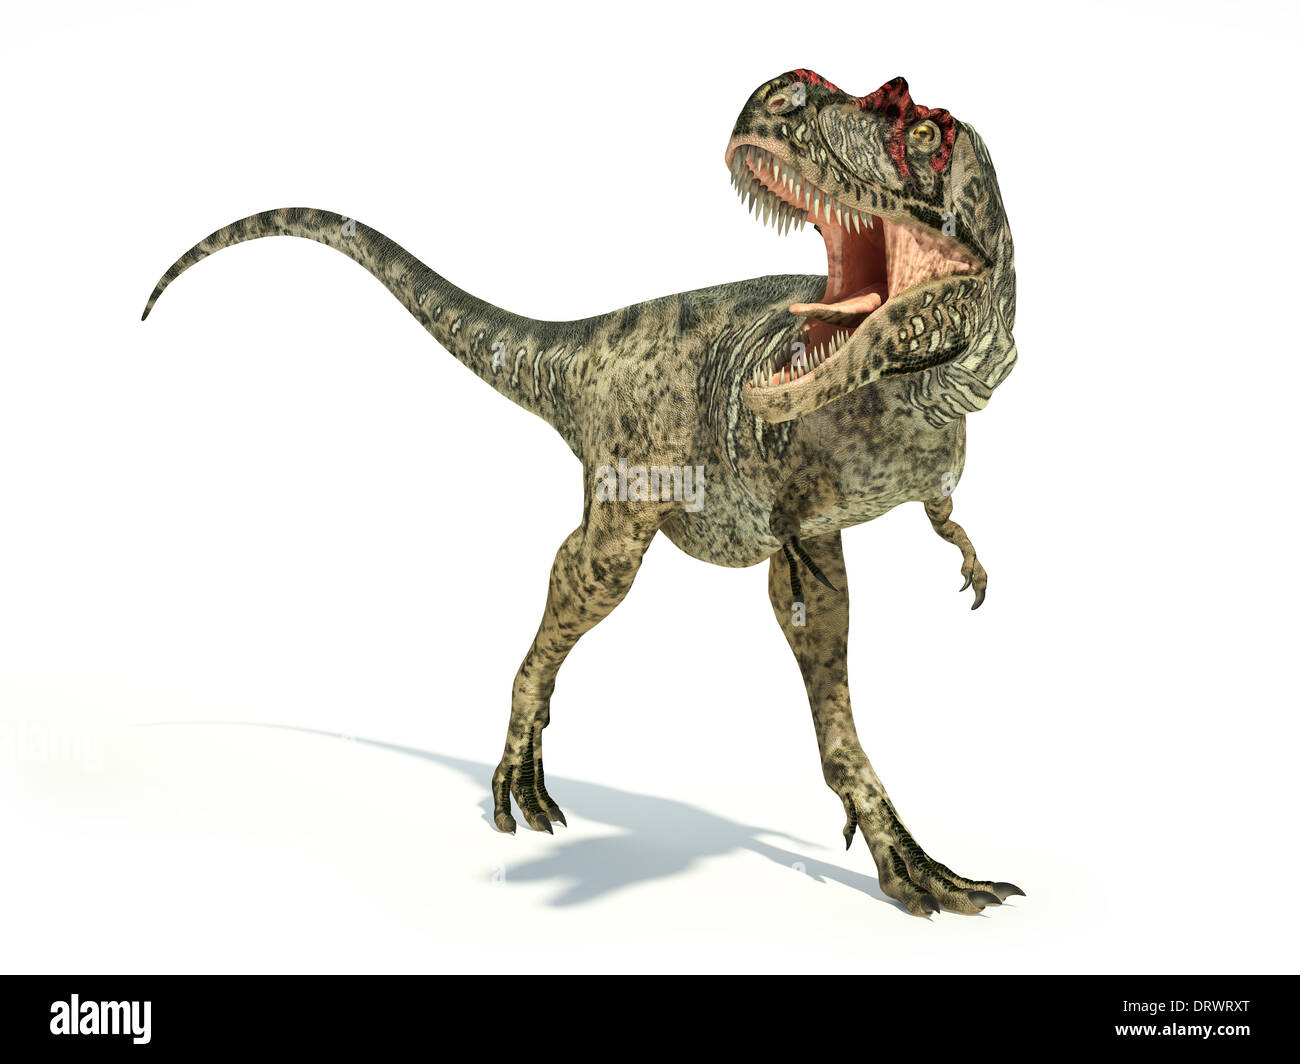 L'Albertosaurus Dinosaure, photo-réalistes et représentation scientifiquement correcte, dynamique posture. Sur fond blanc. Banque D'Images